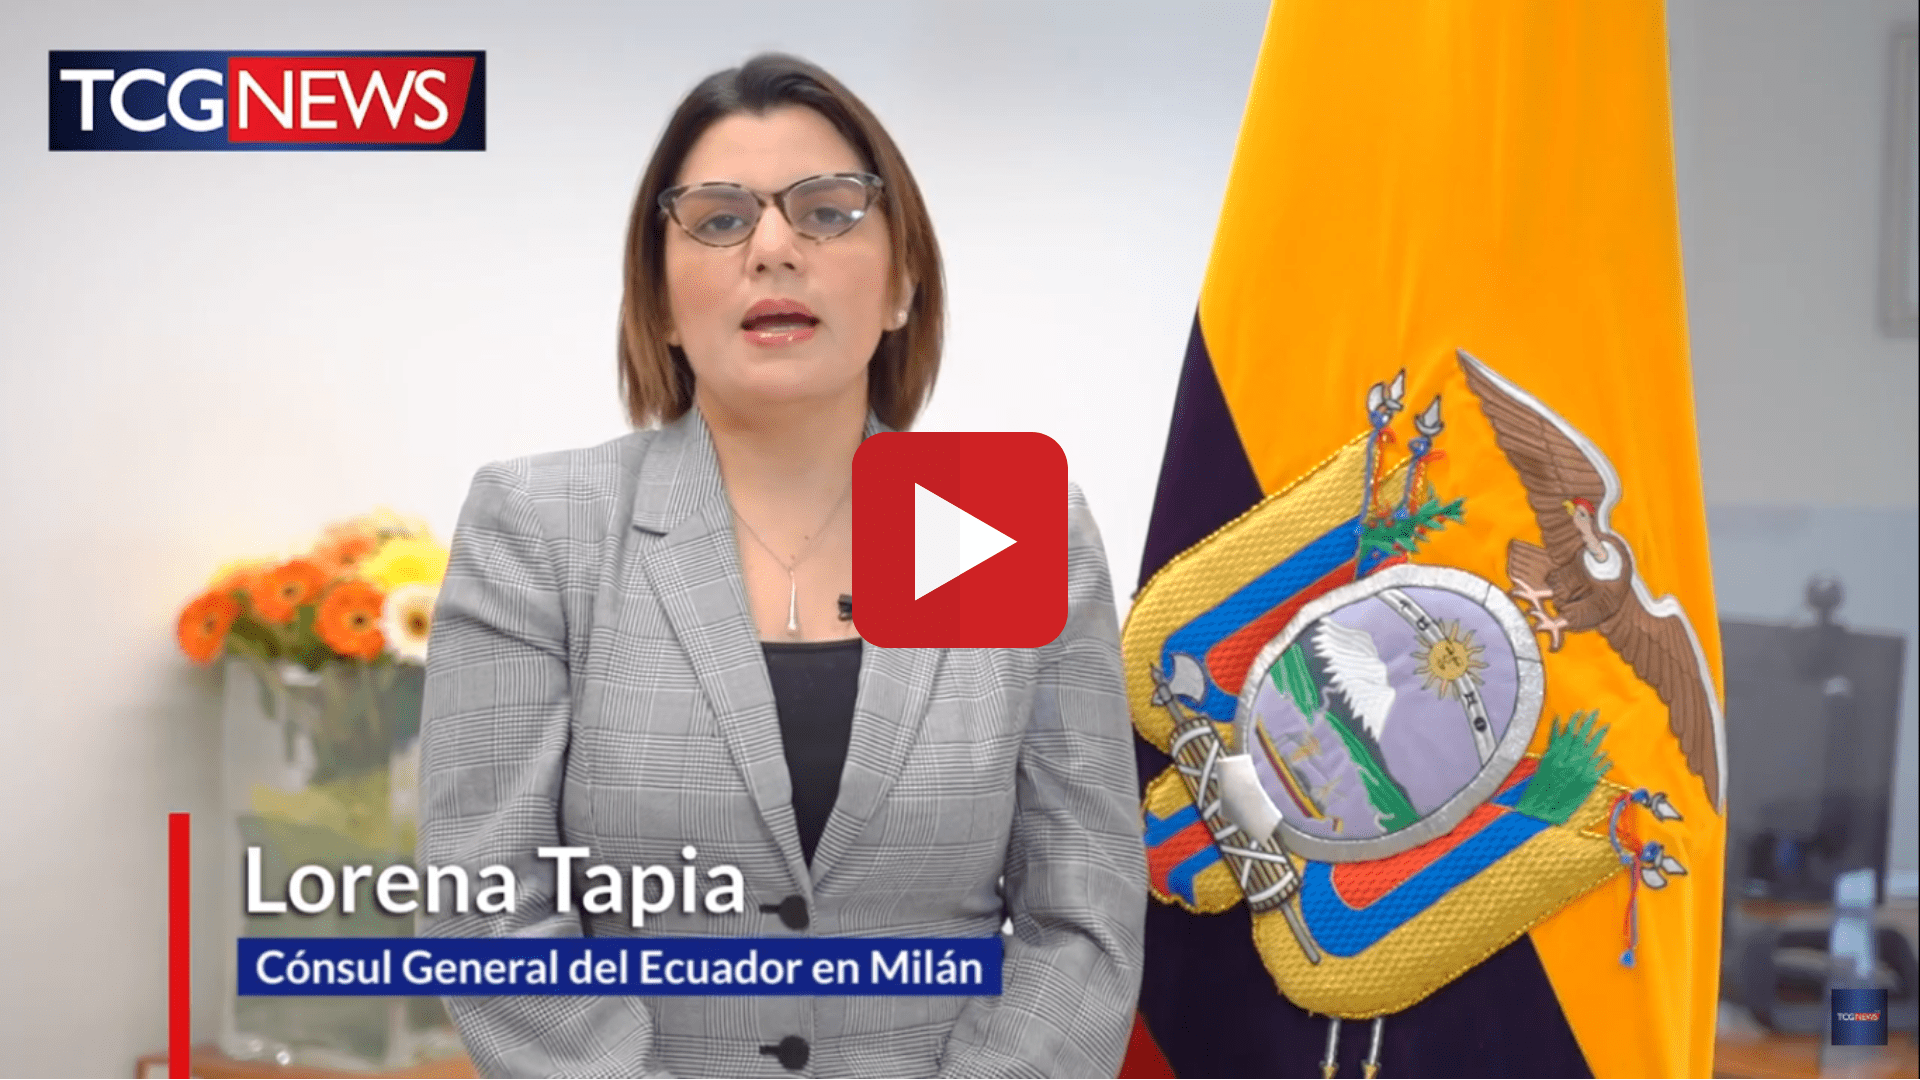 MILAN: ELECCIONES GENERALES ECUADOR 2021 (SEGUNDA VUELTA